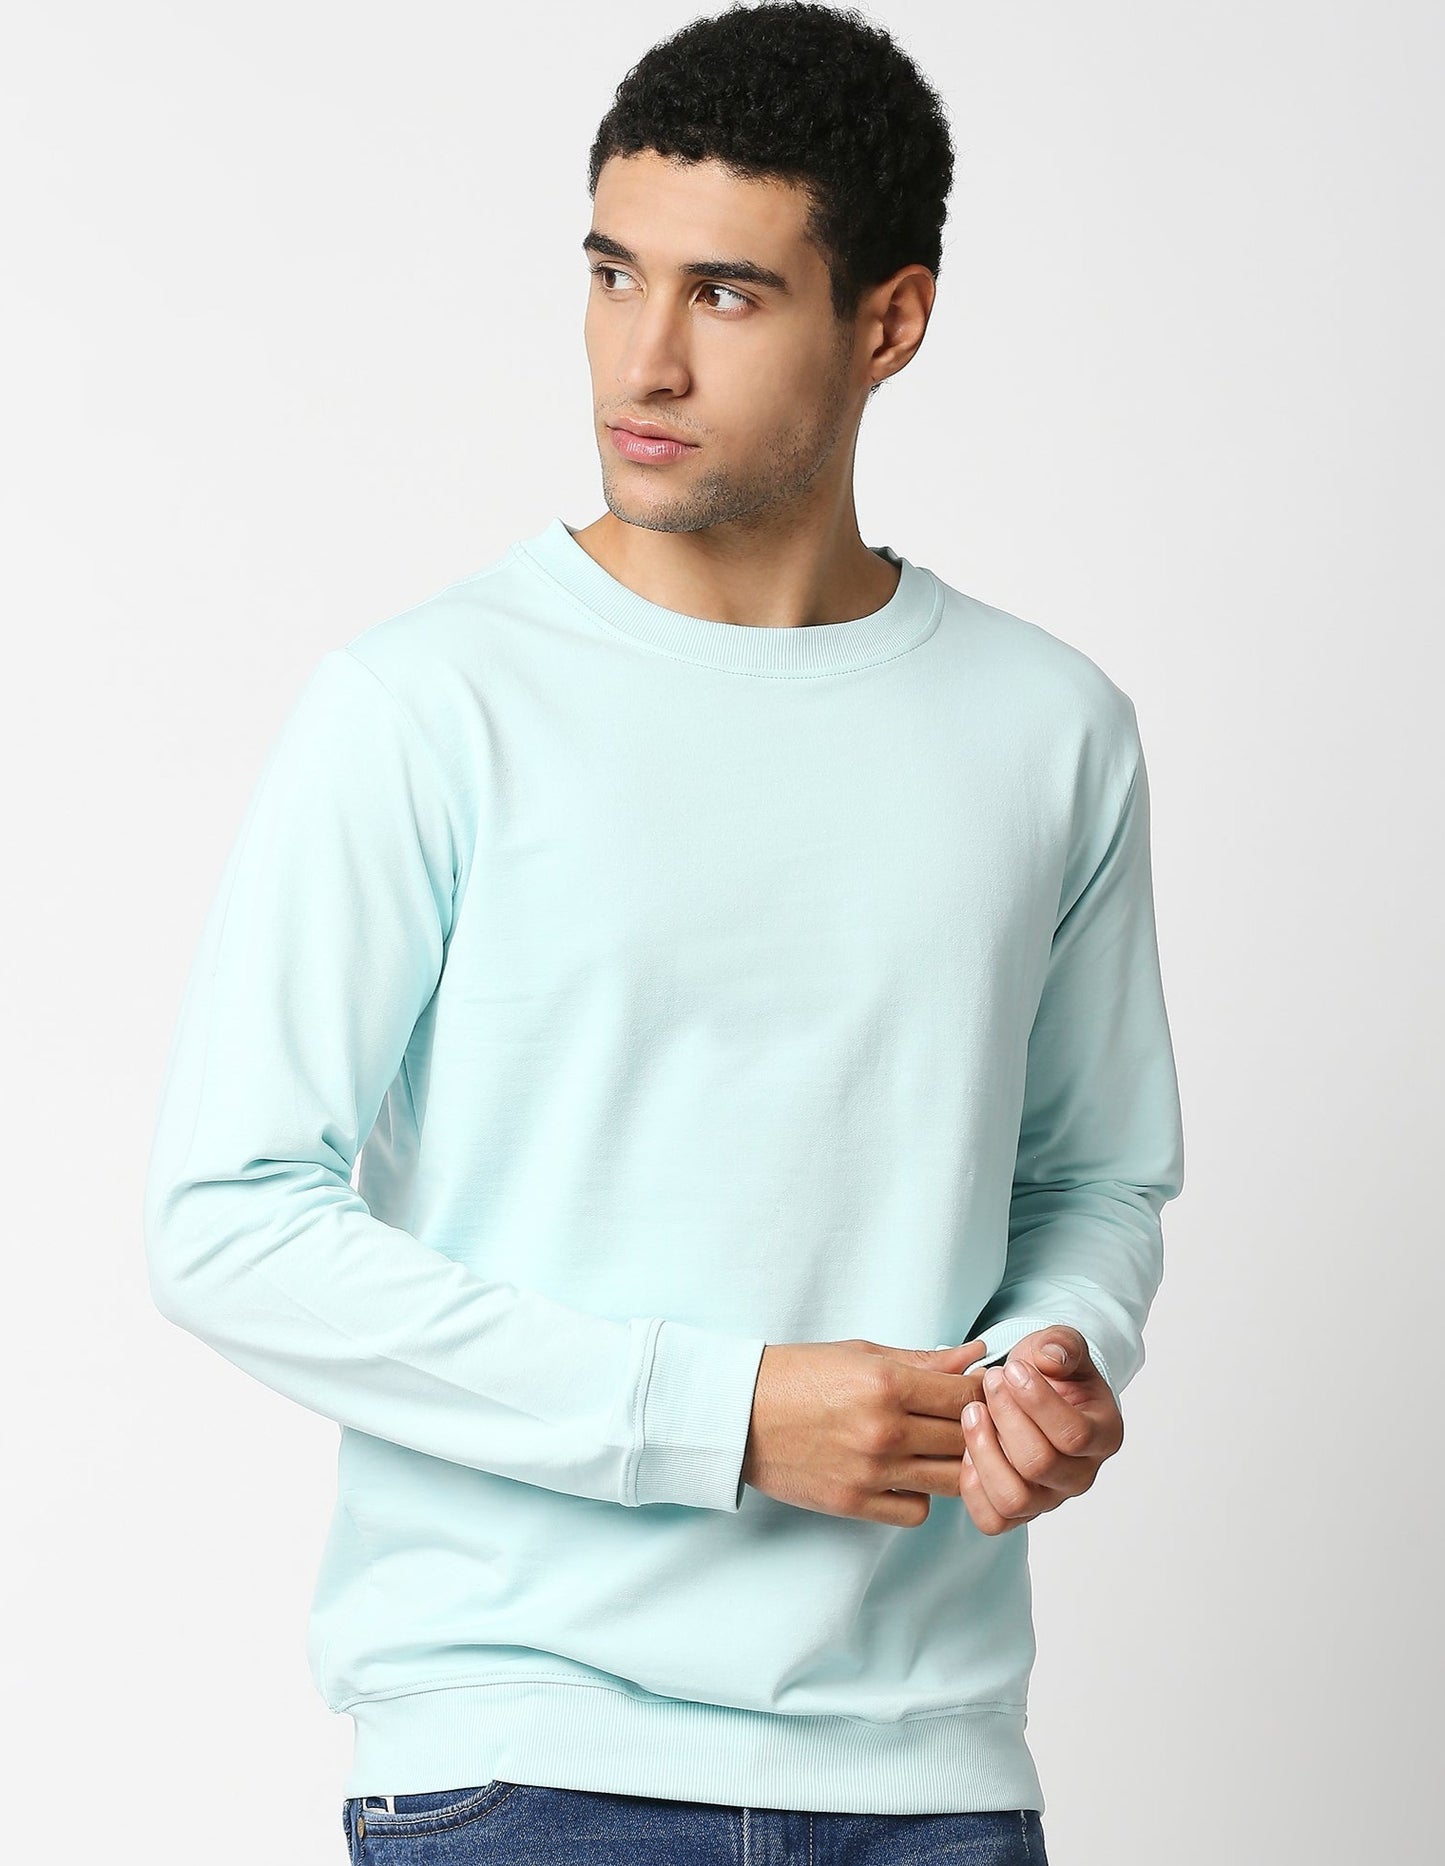 Fostino Vintage Sky Blue Plain Full Sleeves Tshirt - Fostino Shirts & Tops